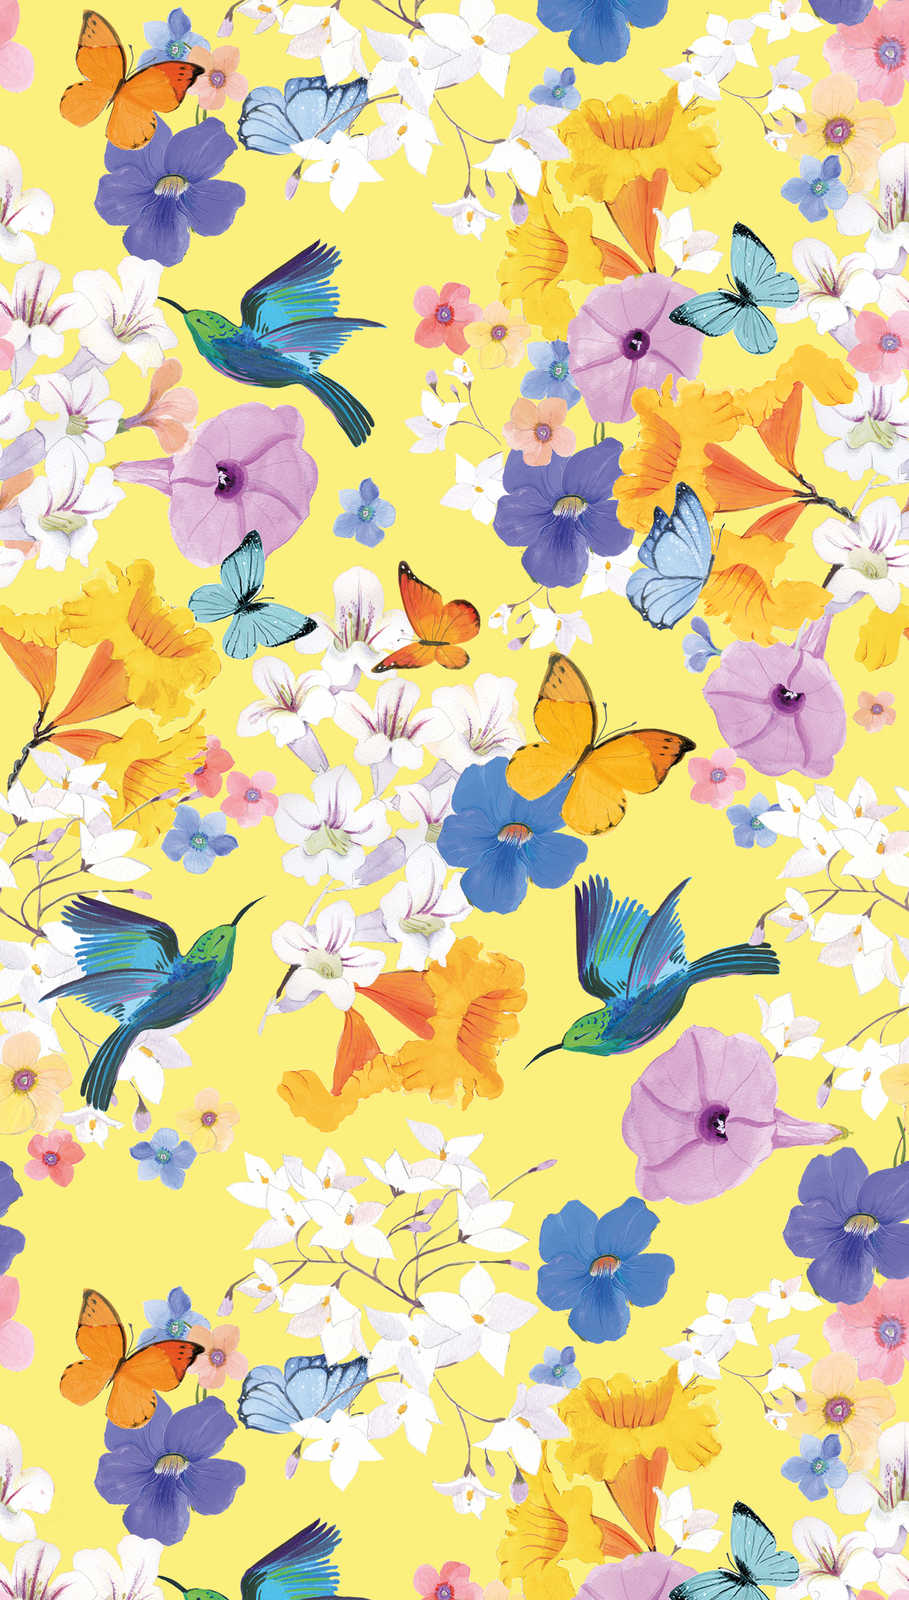             Blumen Tapete mit Schmetterlingen und Vögeln – Bunt, Gelb, Blau
        